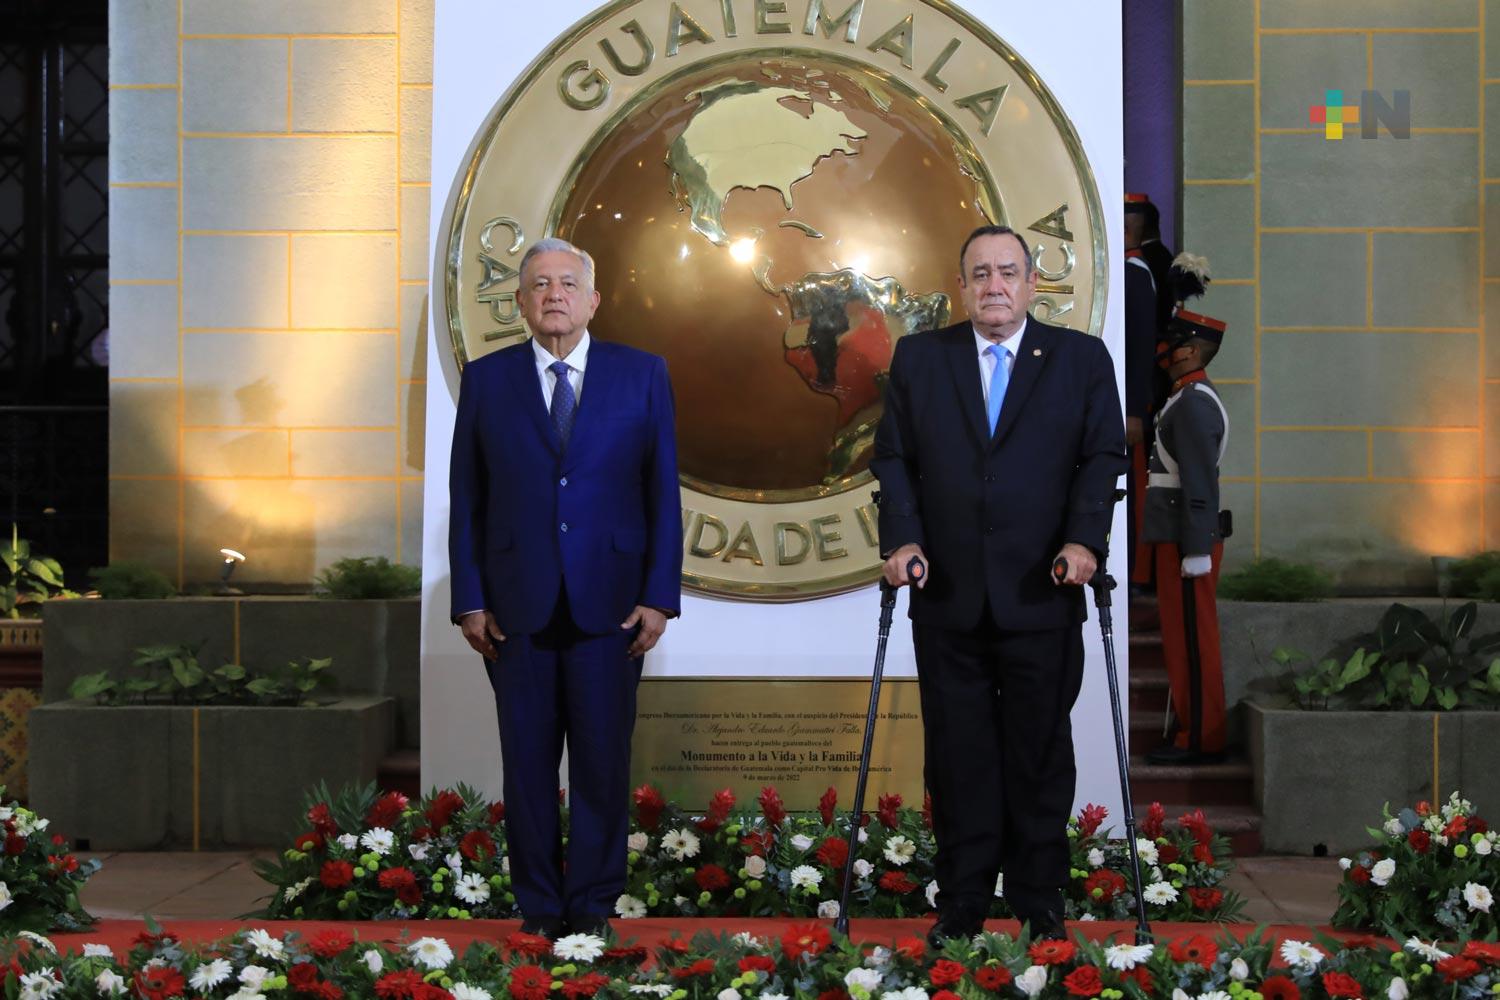 Presidente reafirma compromiso con Guatemala, en atención al fenómeno migratorio